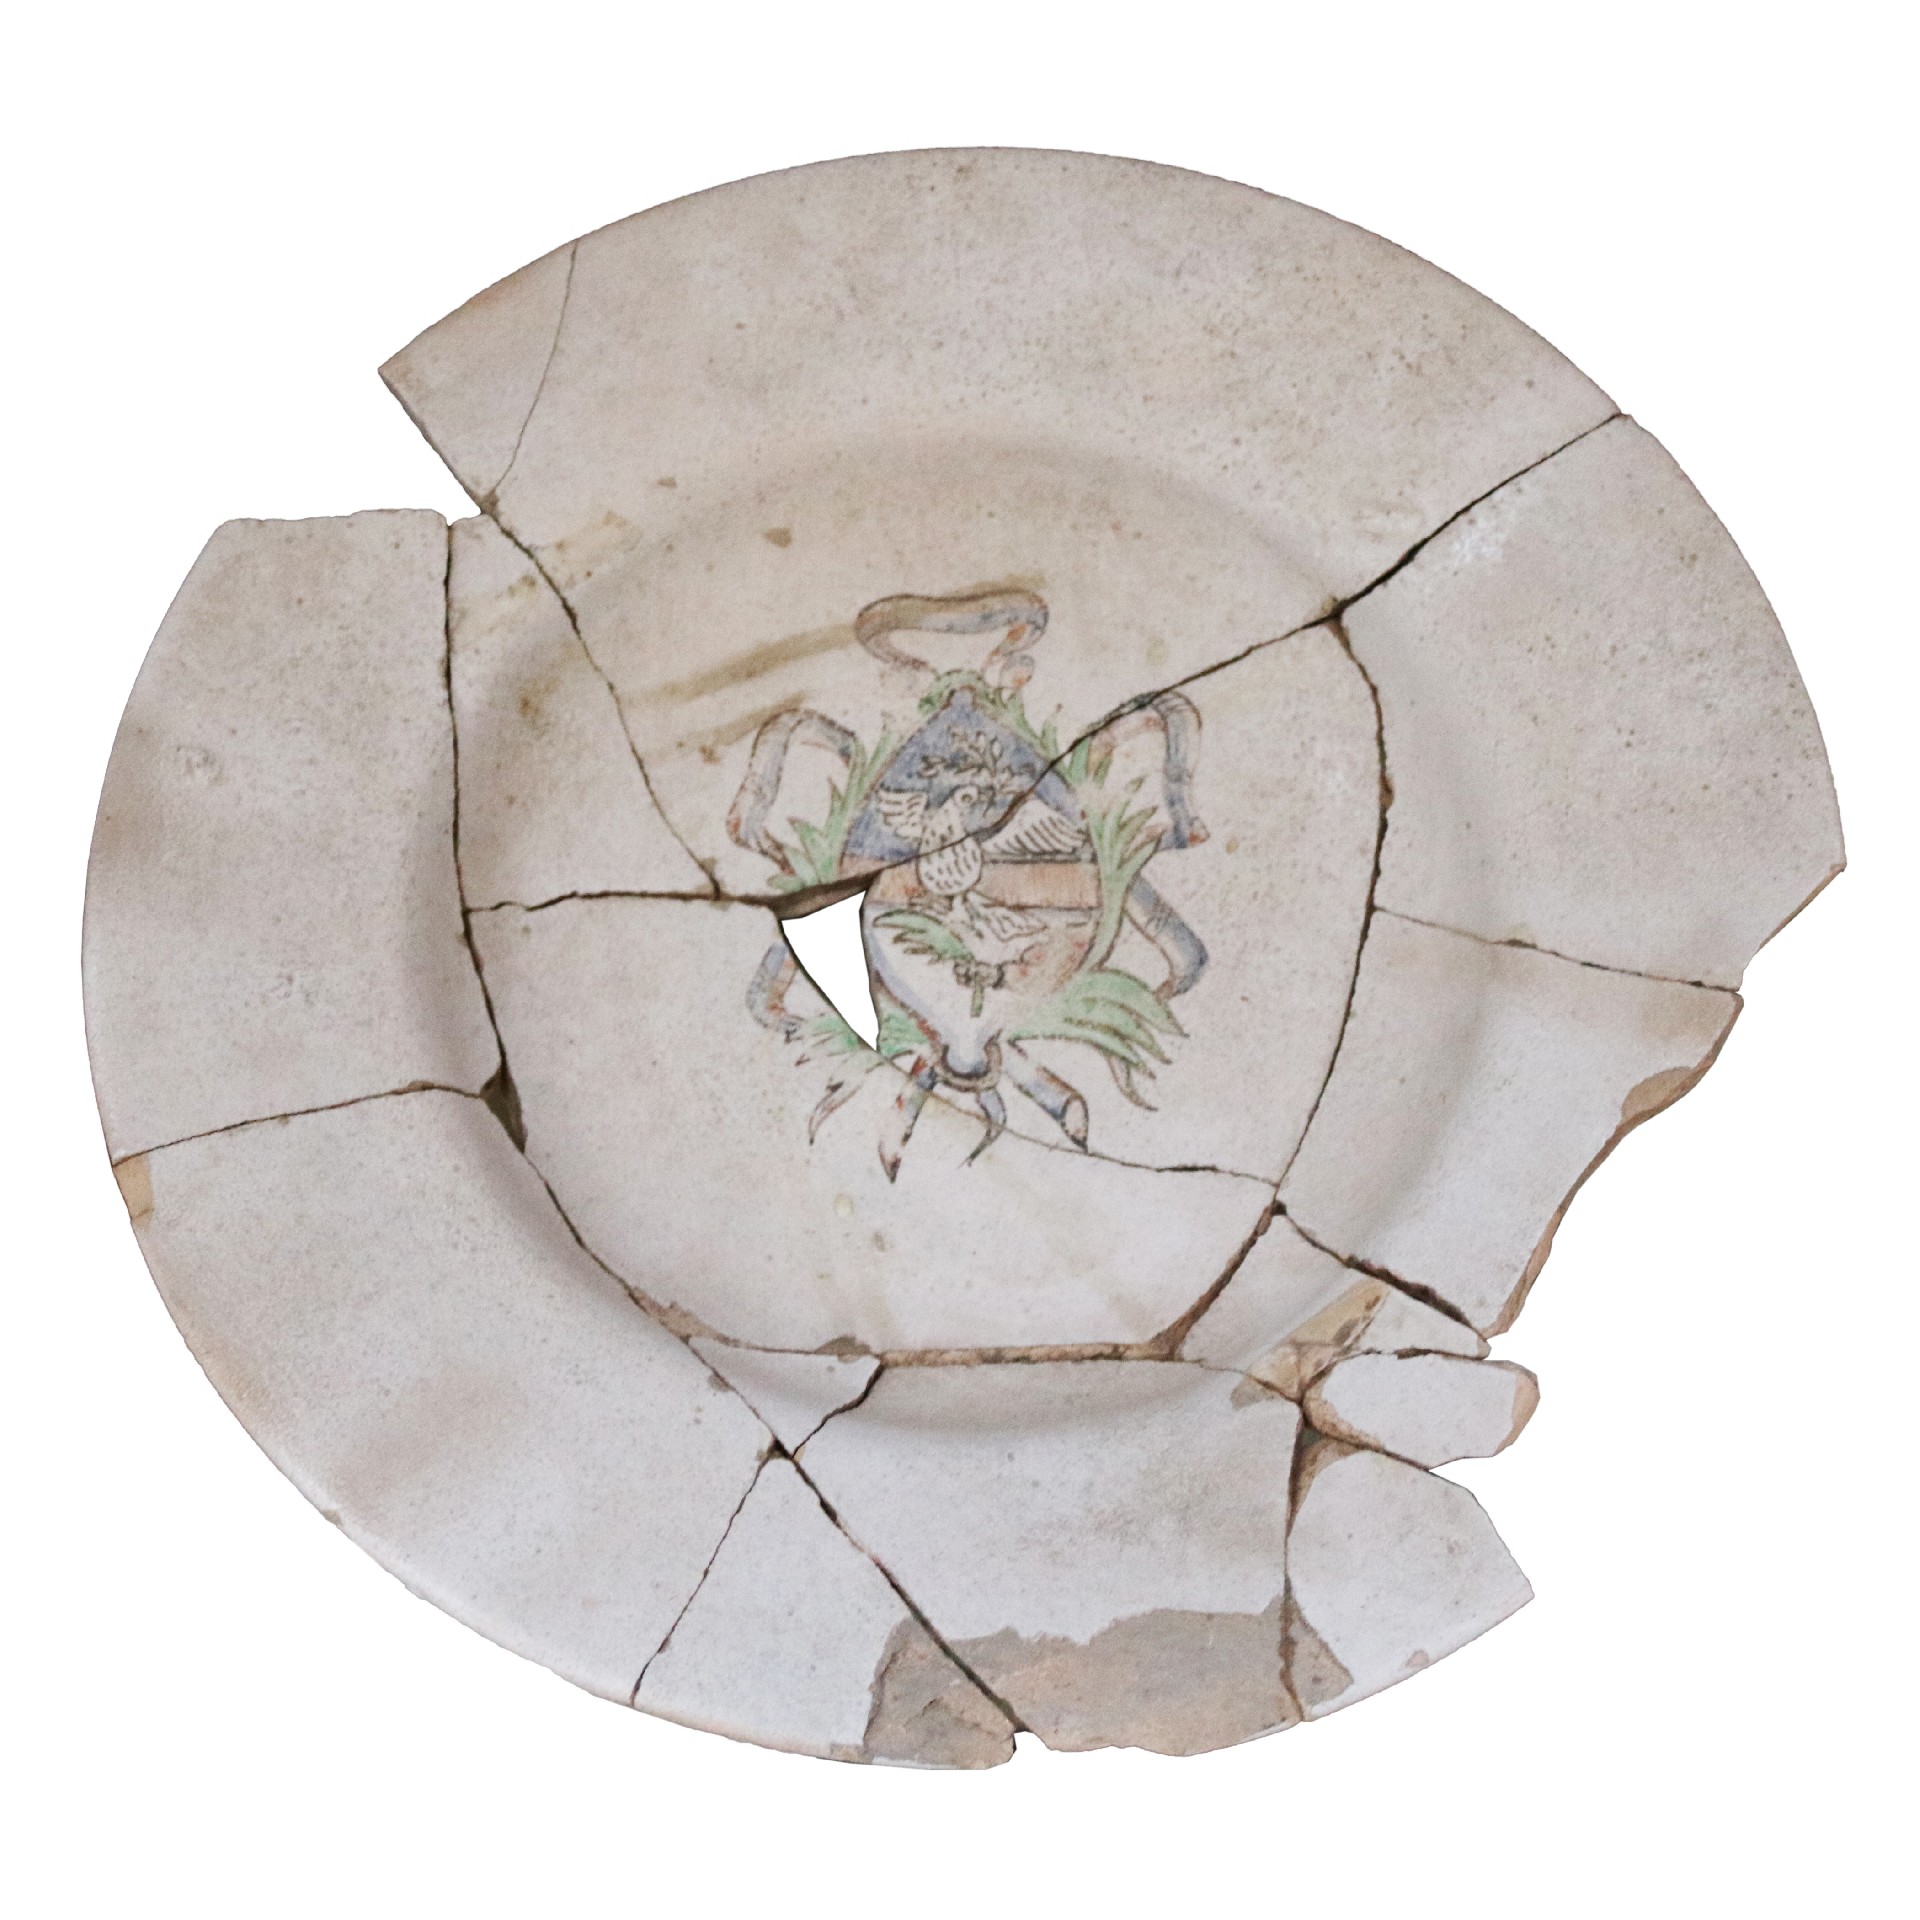 Antico frammento in maiolica - Ceramiche - Oggettistica - Prodotti - Antichità Fiorillo